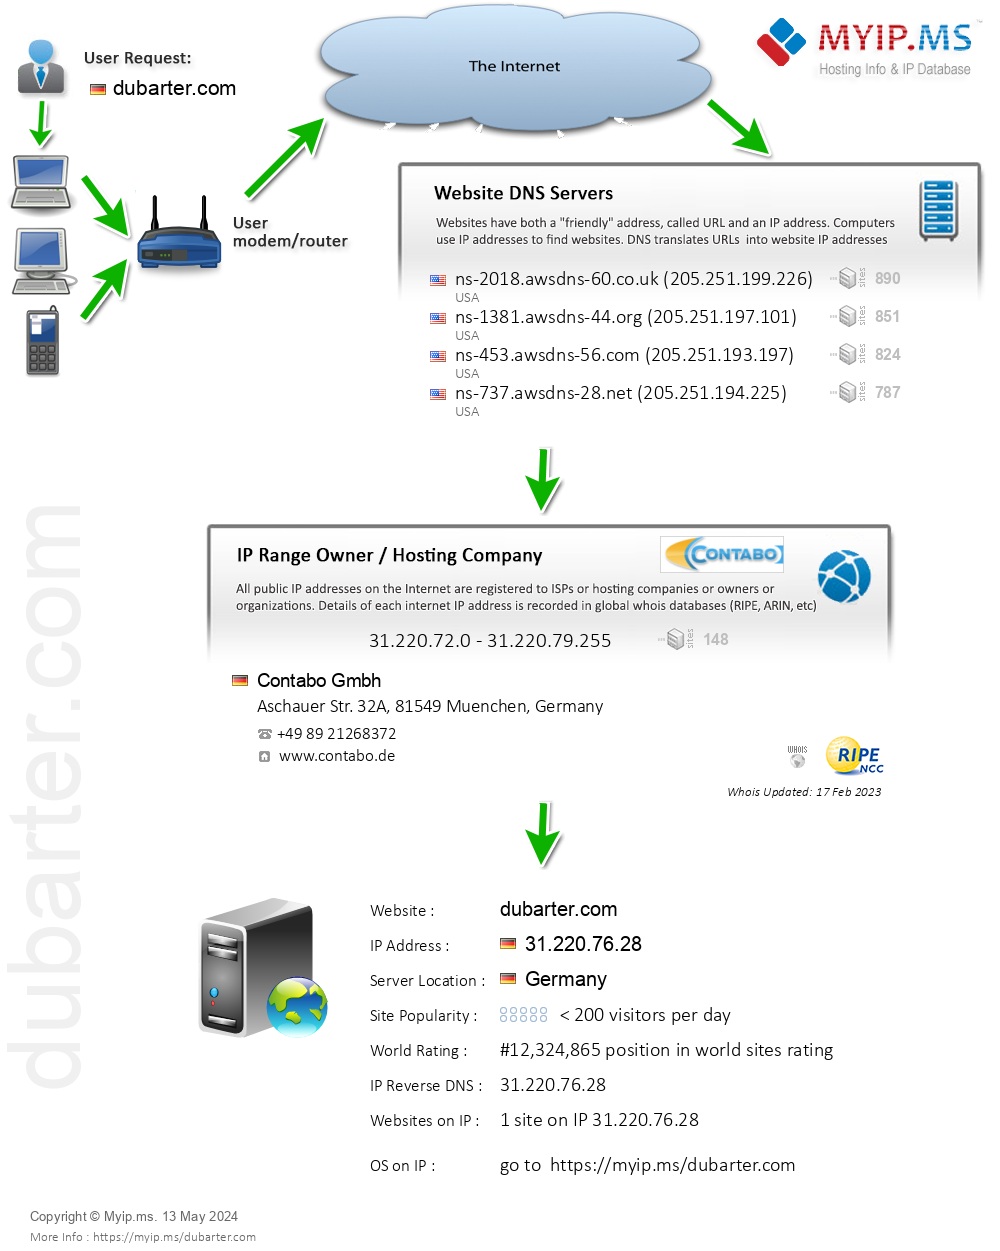 Dubarter.com - Website Hosting Visual IP Diagram